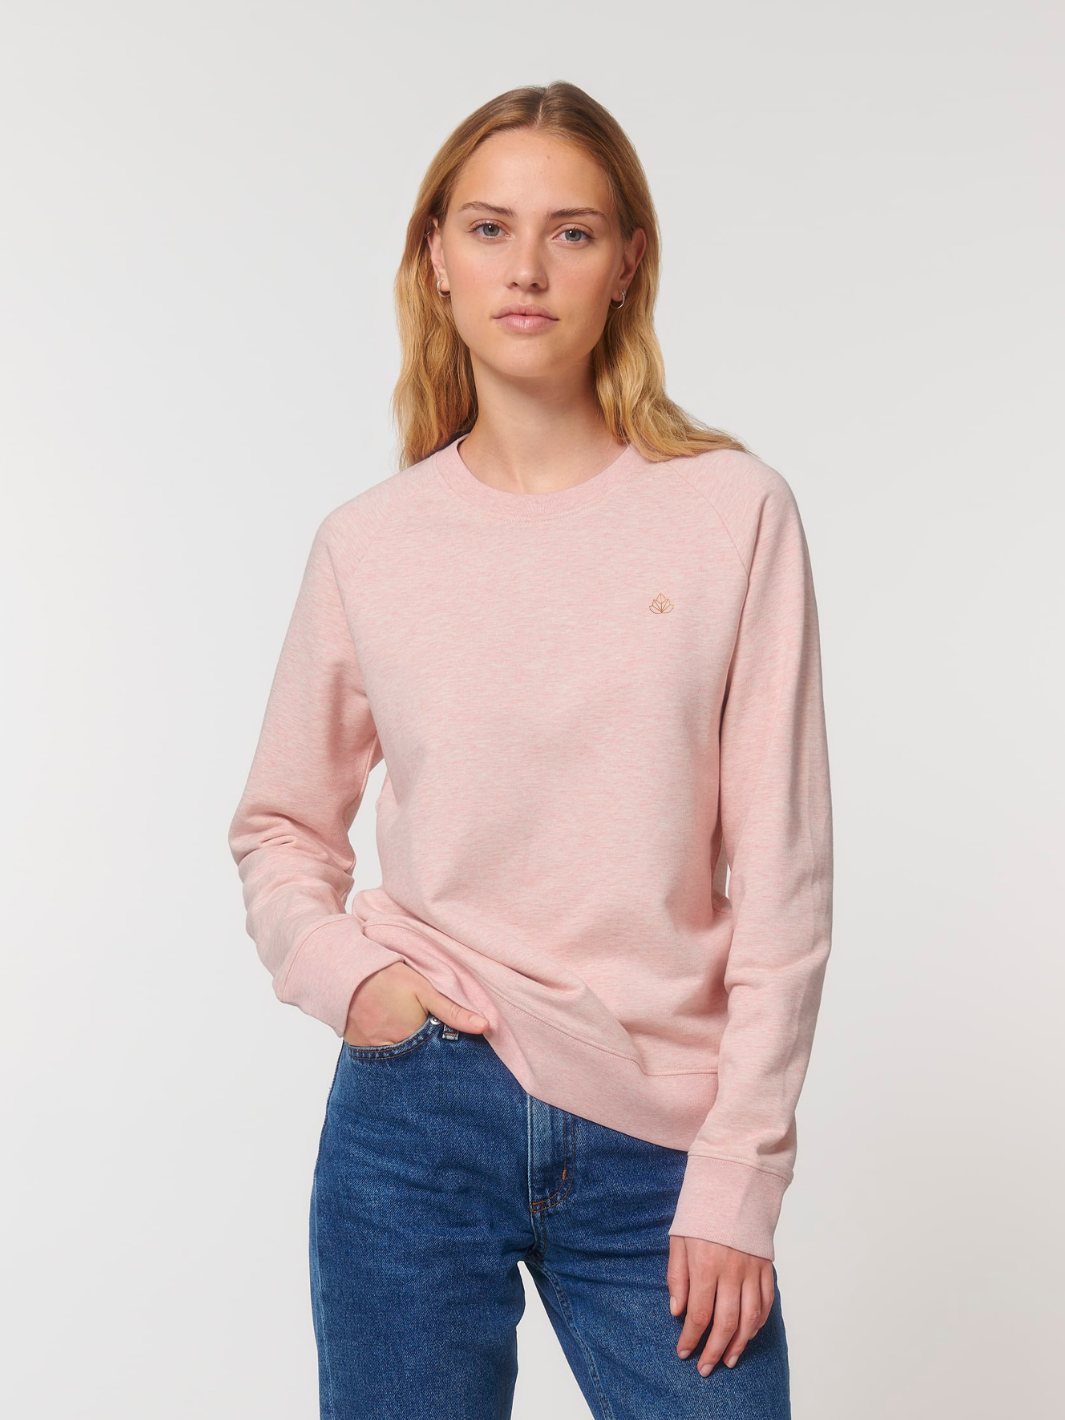 Women's sweatshirt Cozy pink brindle